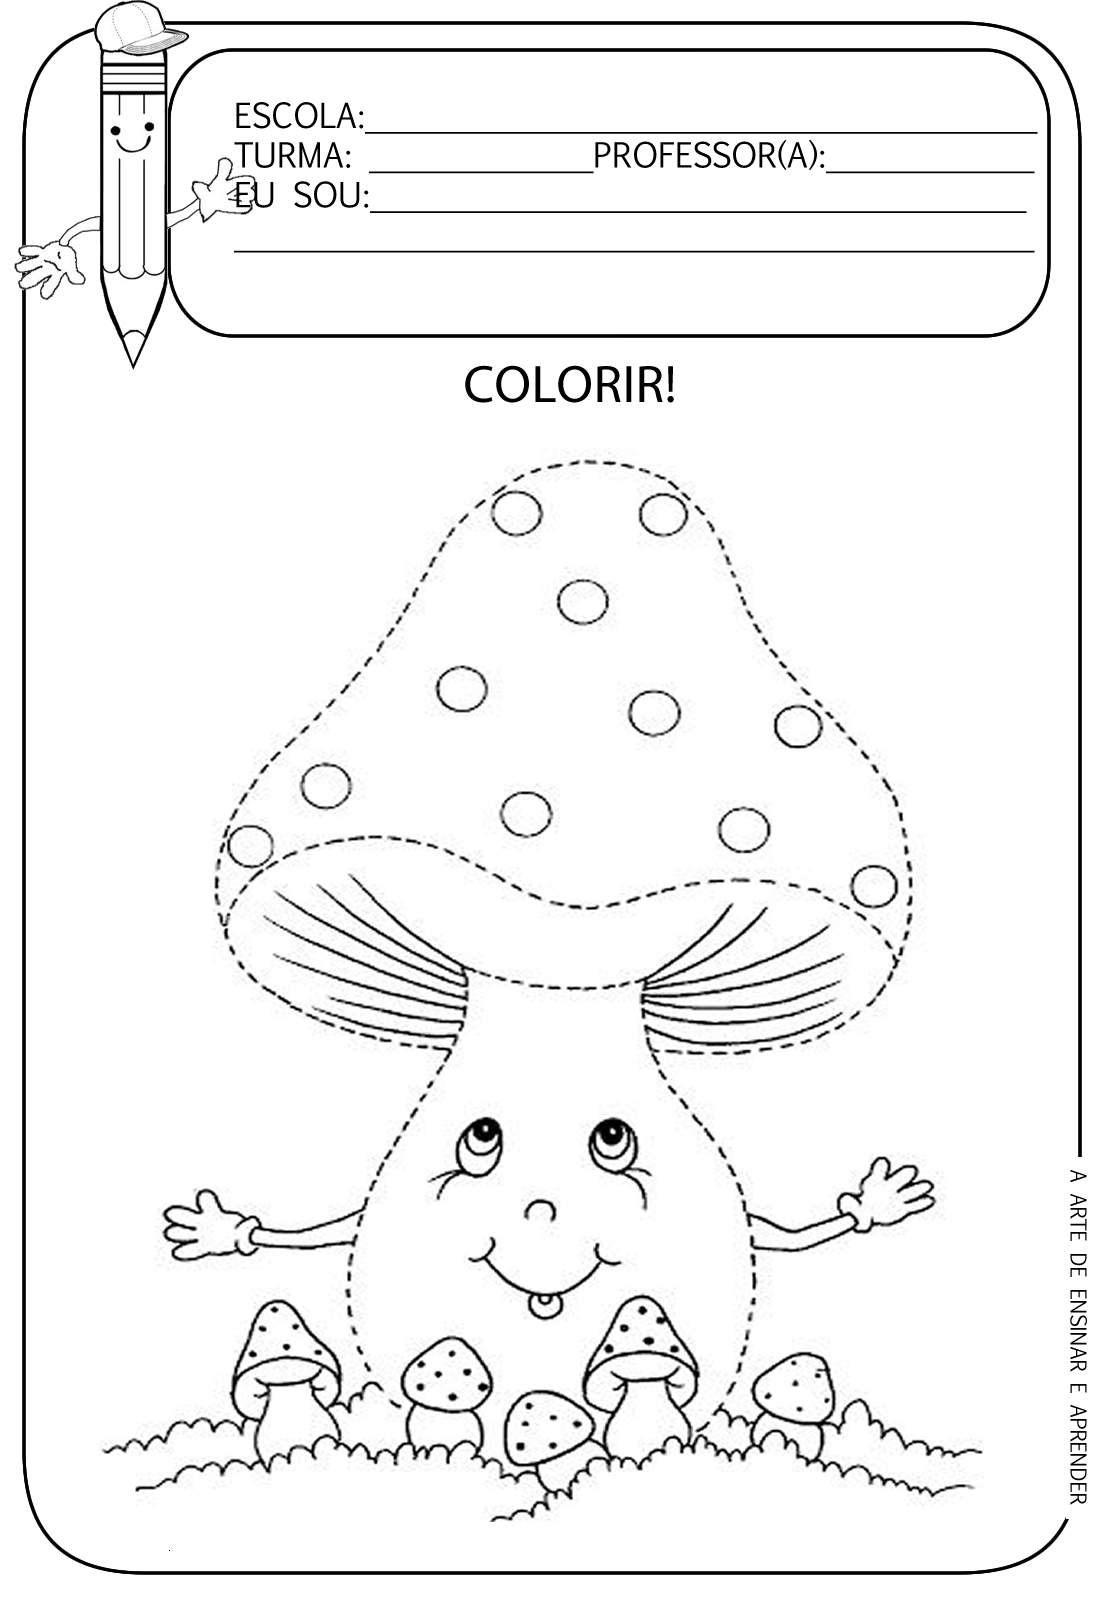 Atividades com desenhos para colorir - A Arte de Ensinar e Aprender